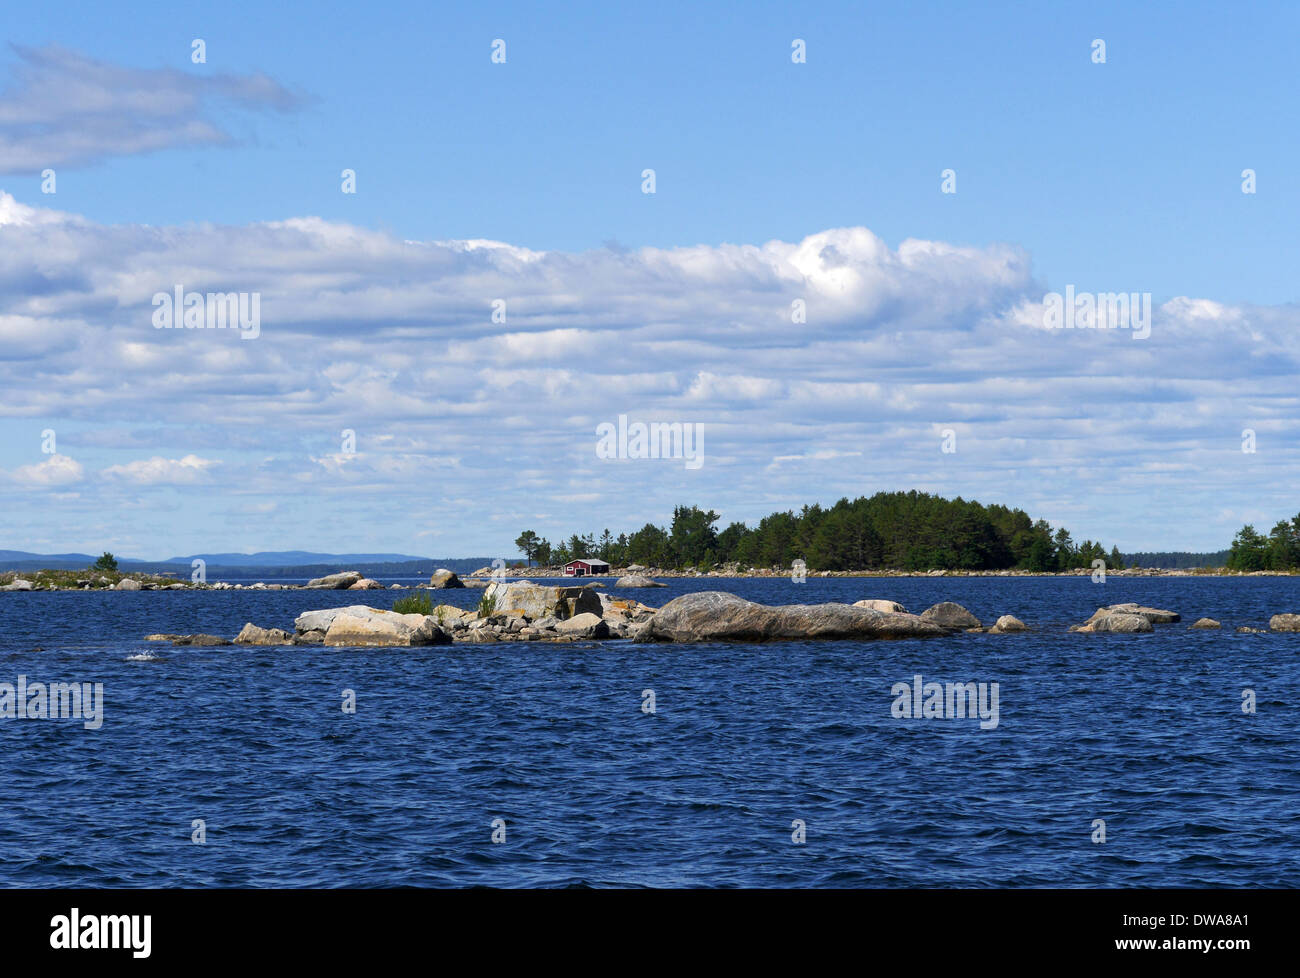 archipelago near söderhamn, gävleborgs län, hälsingland, gulf of bothnia, sweden Stock Photo